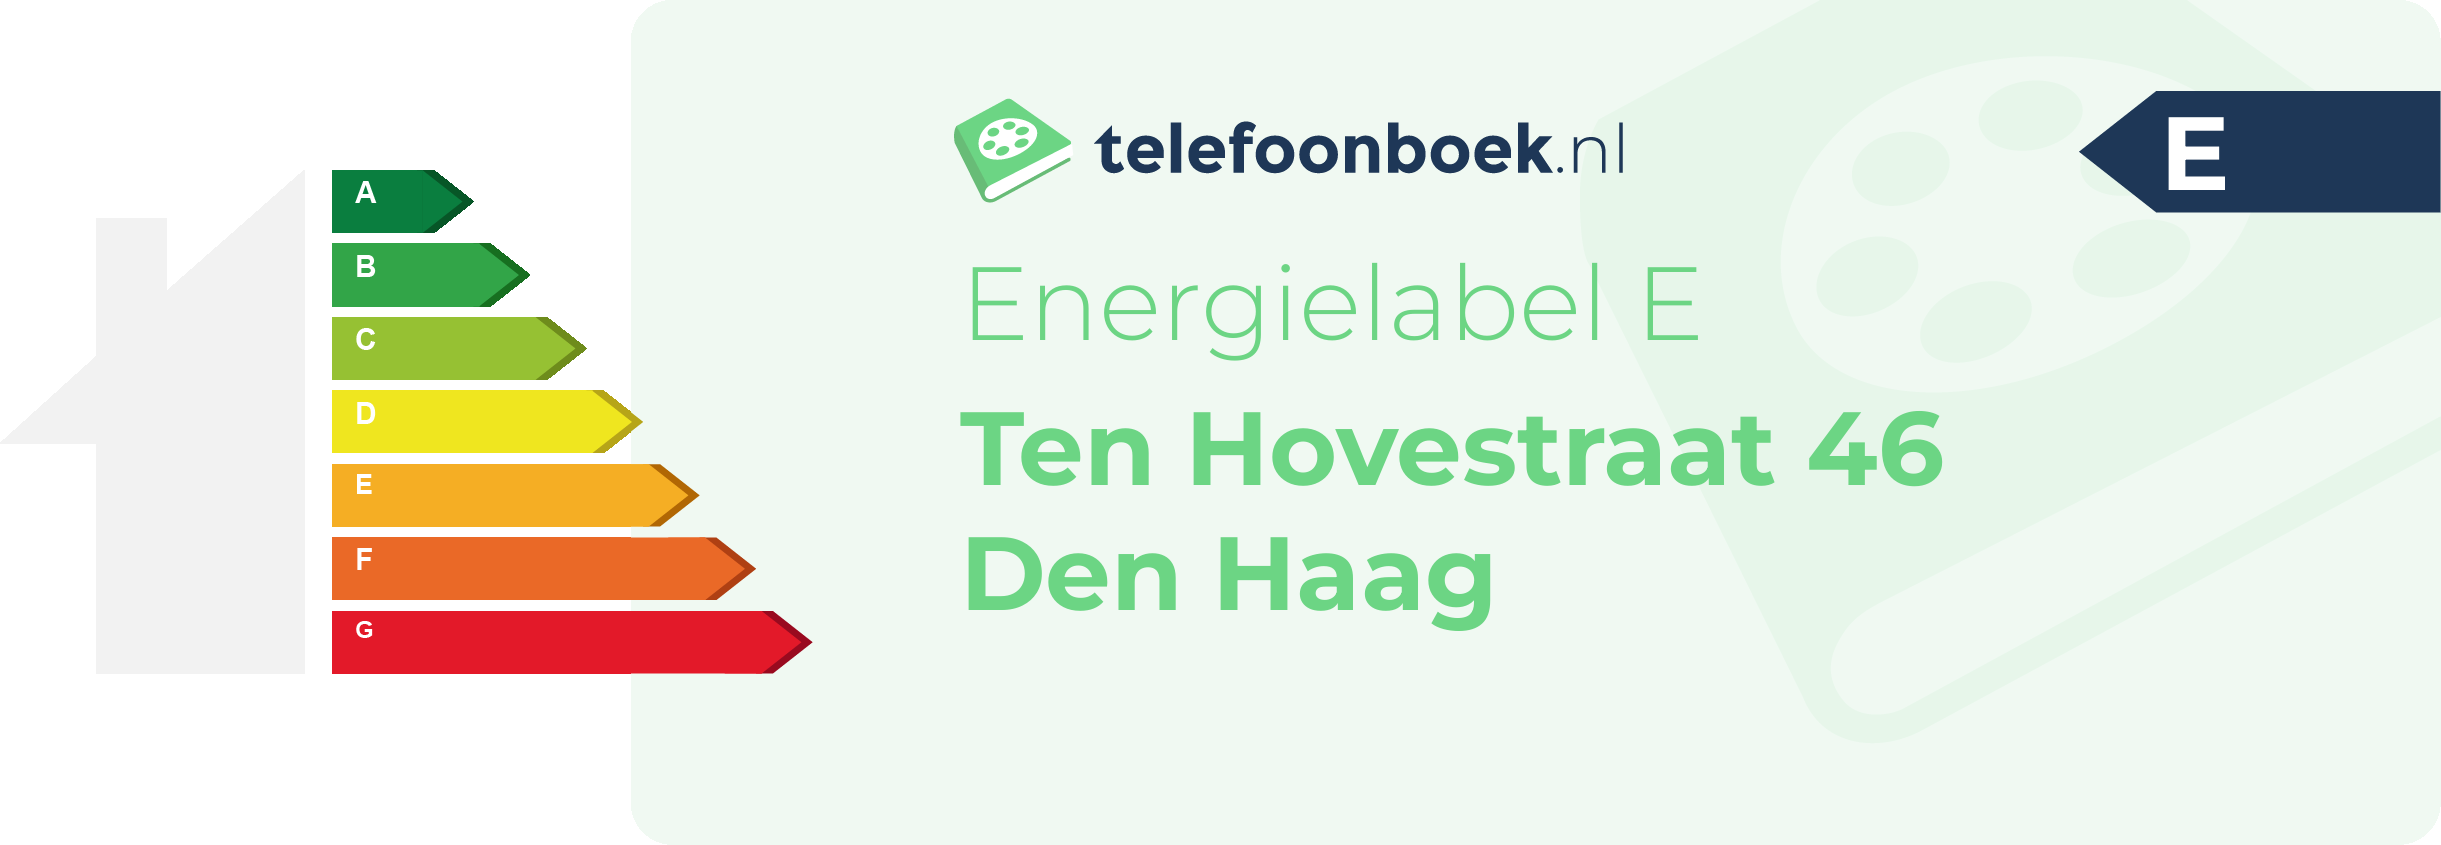 Energielabel Ten Hovestraat 46 Den Haag